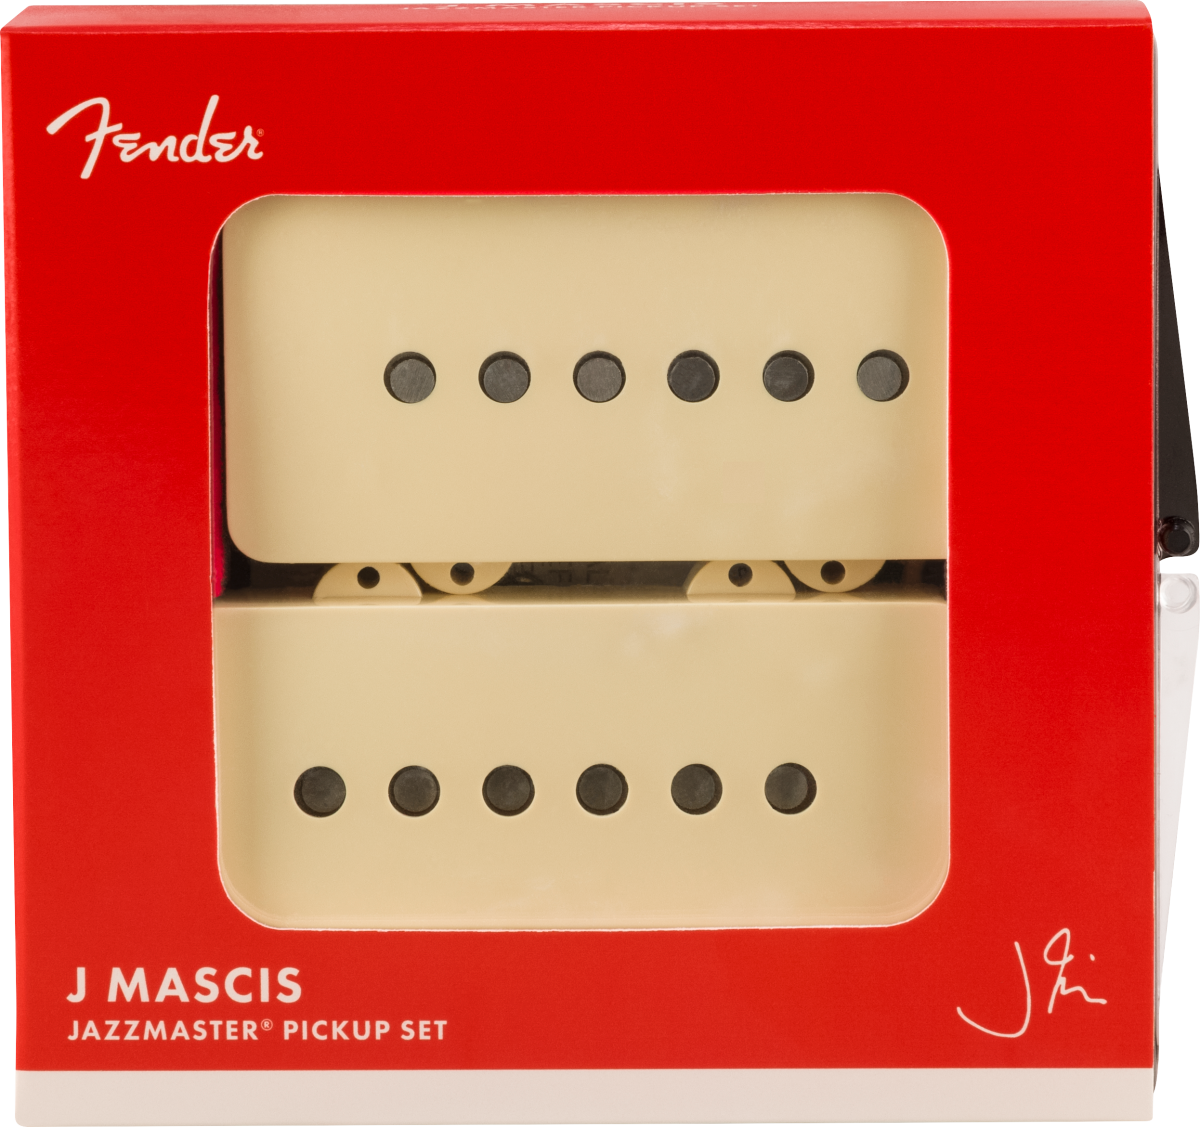 J Mascis Jazzmaster Pickup Set